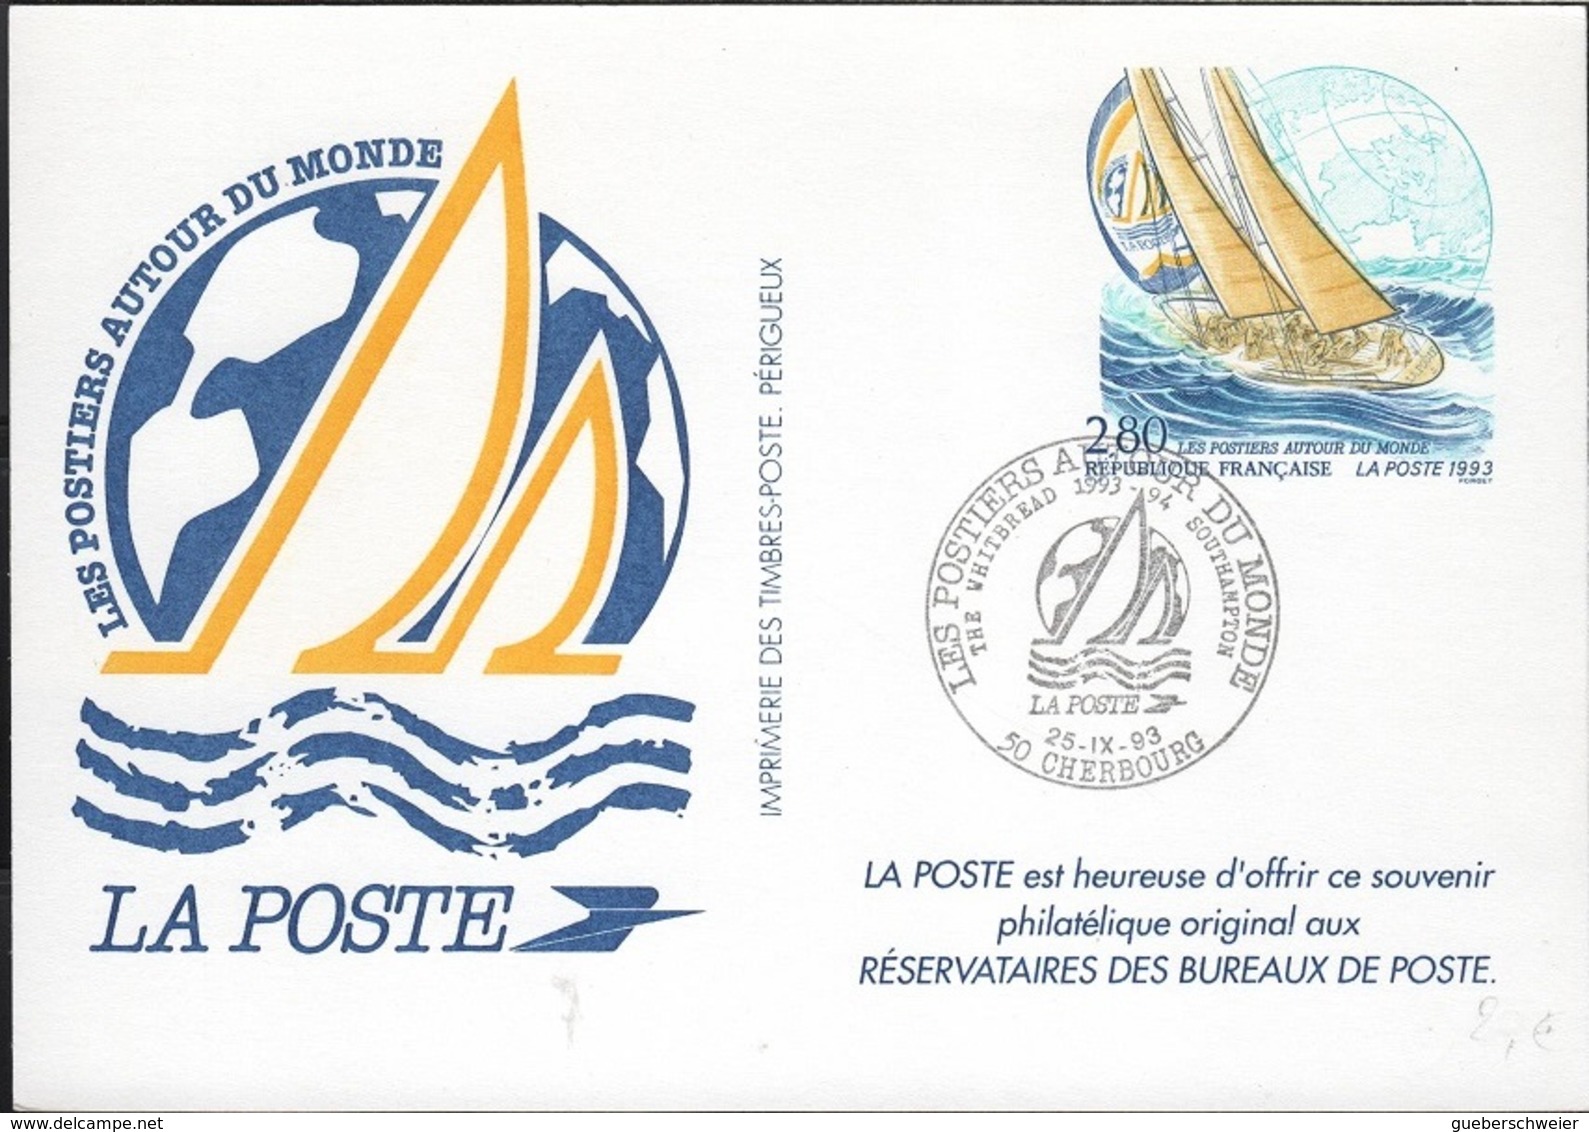 NAU-L47 - FRANCE Les Postiers Autour Du Monde Cherbourg - Privatganzsachen